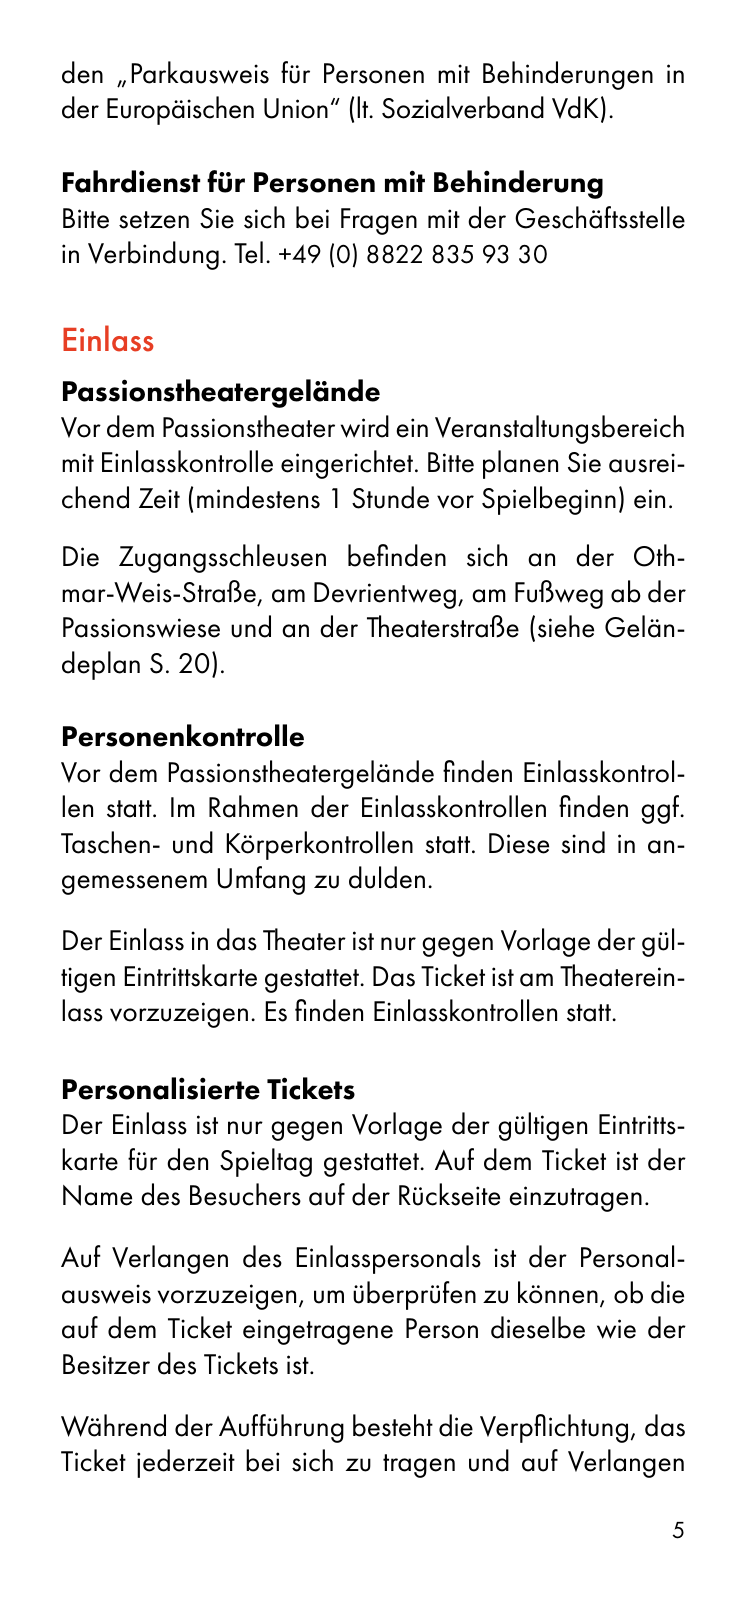 Vorschau Besucherinformation - Ticket only 24.08. Seite 5